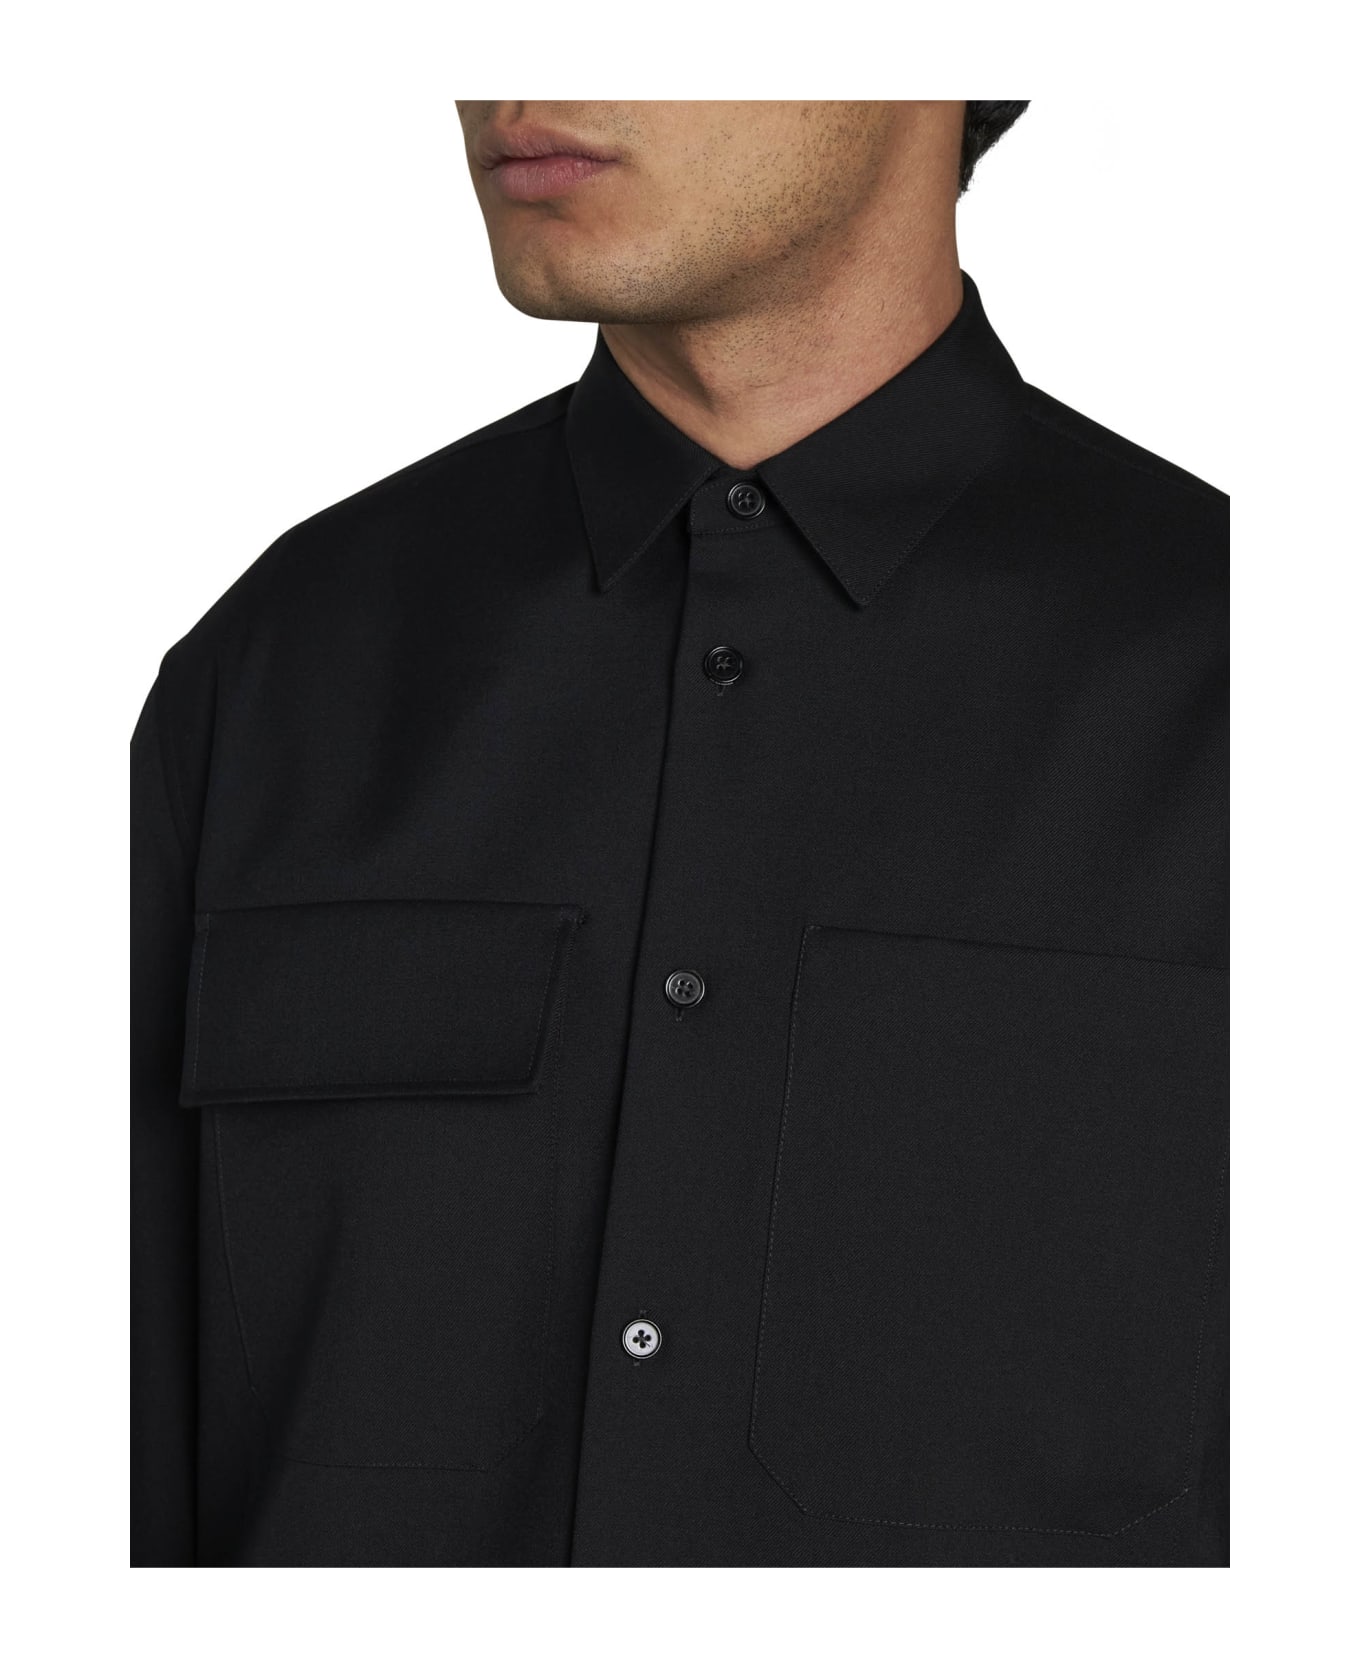 Jil Sander Shirt - Black